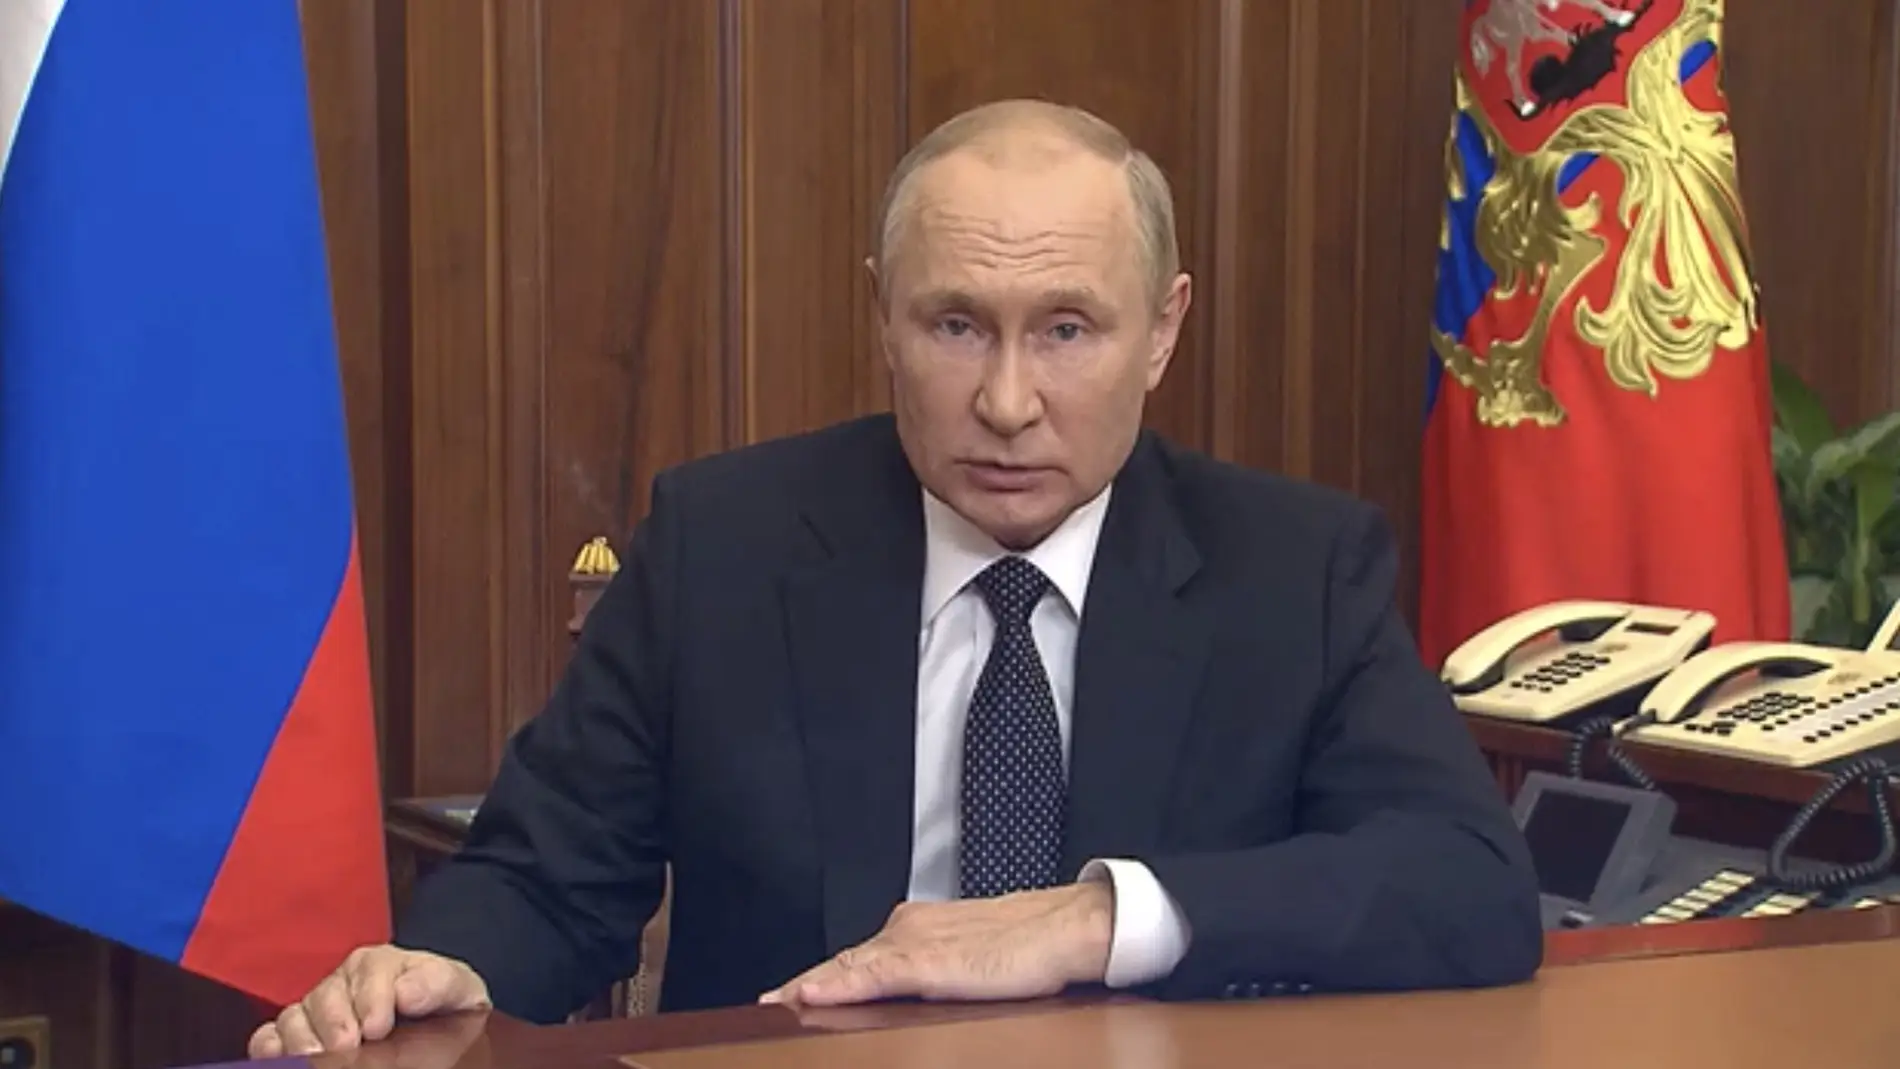 Guerra en Ucrania: Putin anuncia una "movilización parcial" para defender la soberanía de Rusia